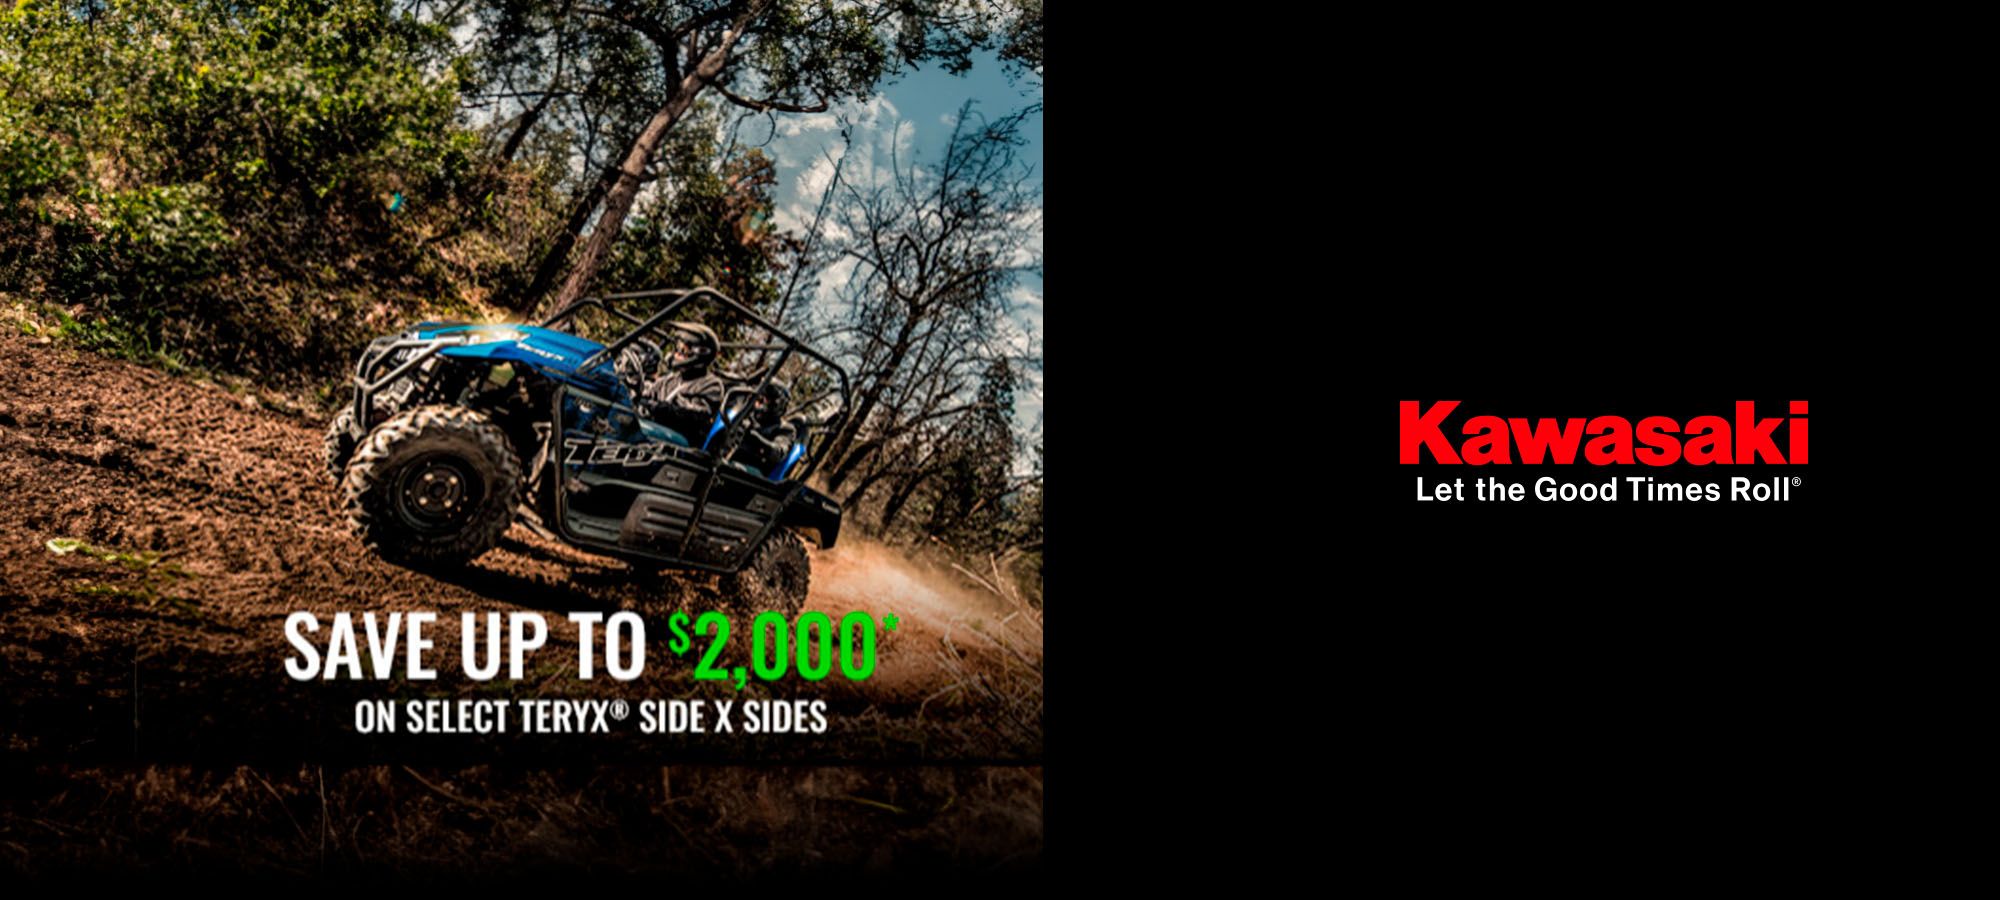 Kawasaki US - Save Up to $2,000* On Select Side X Sides at Martin Moto